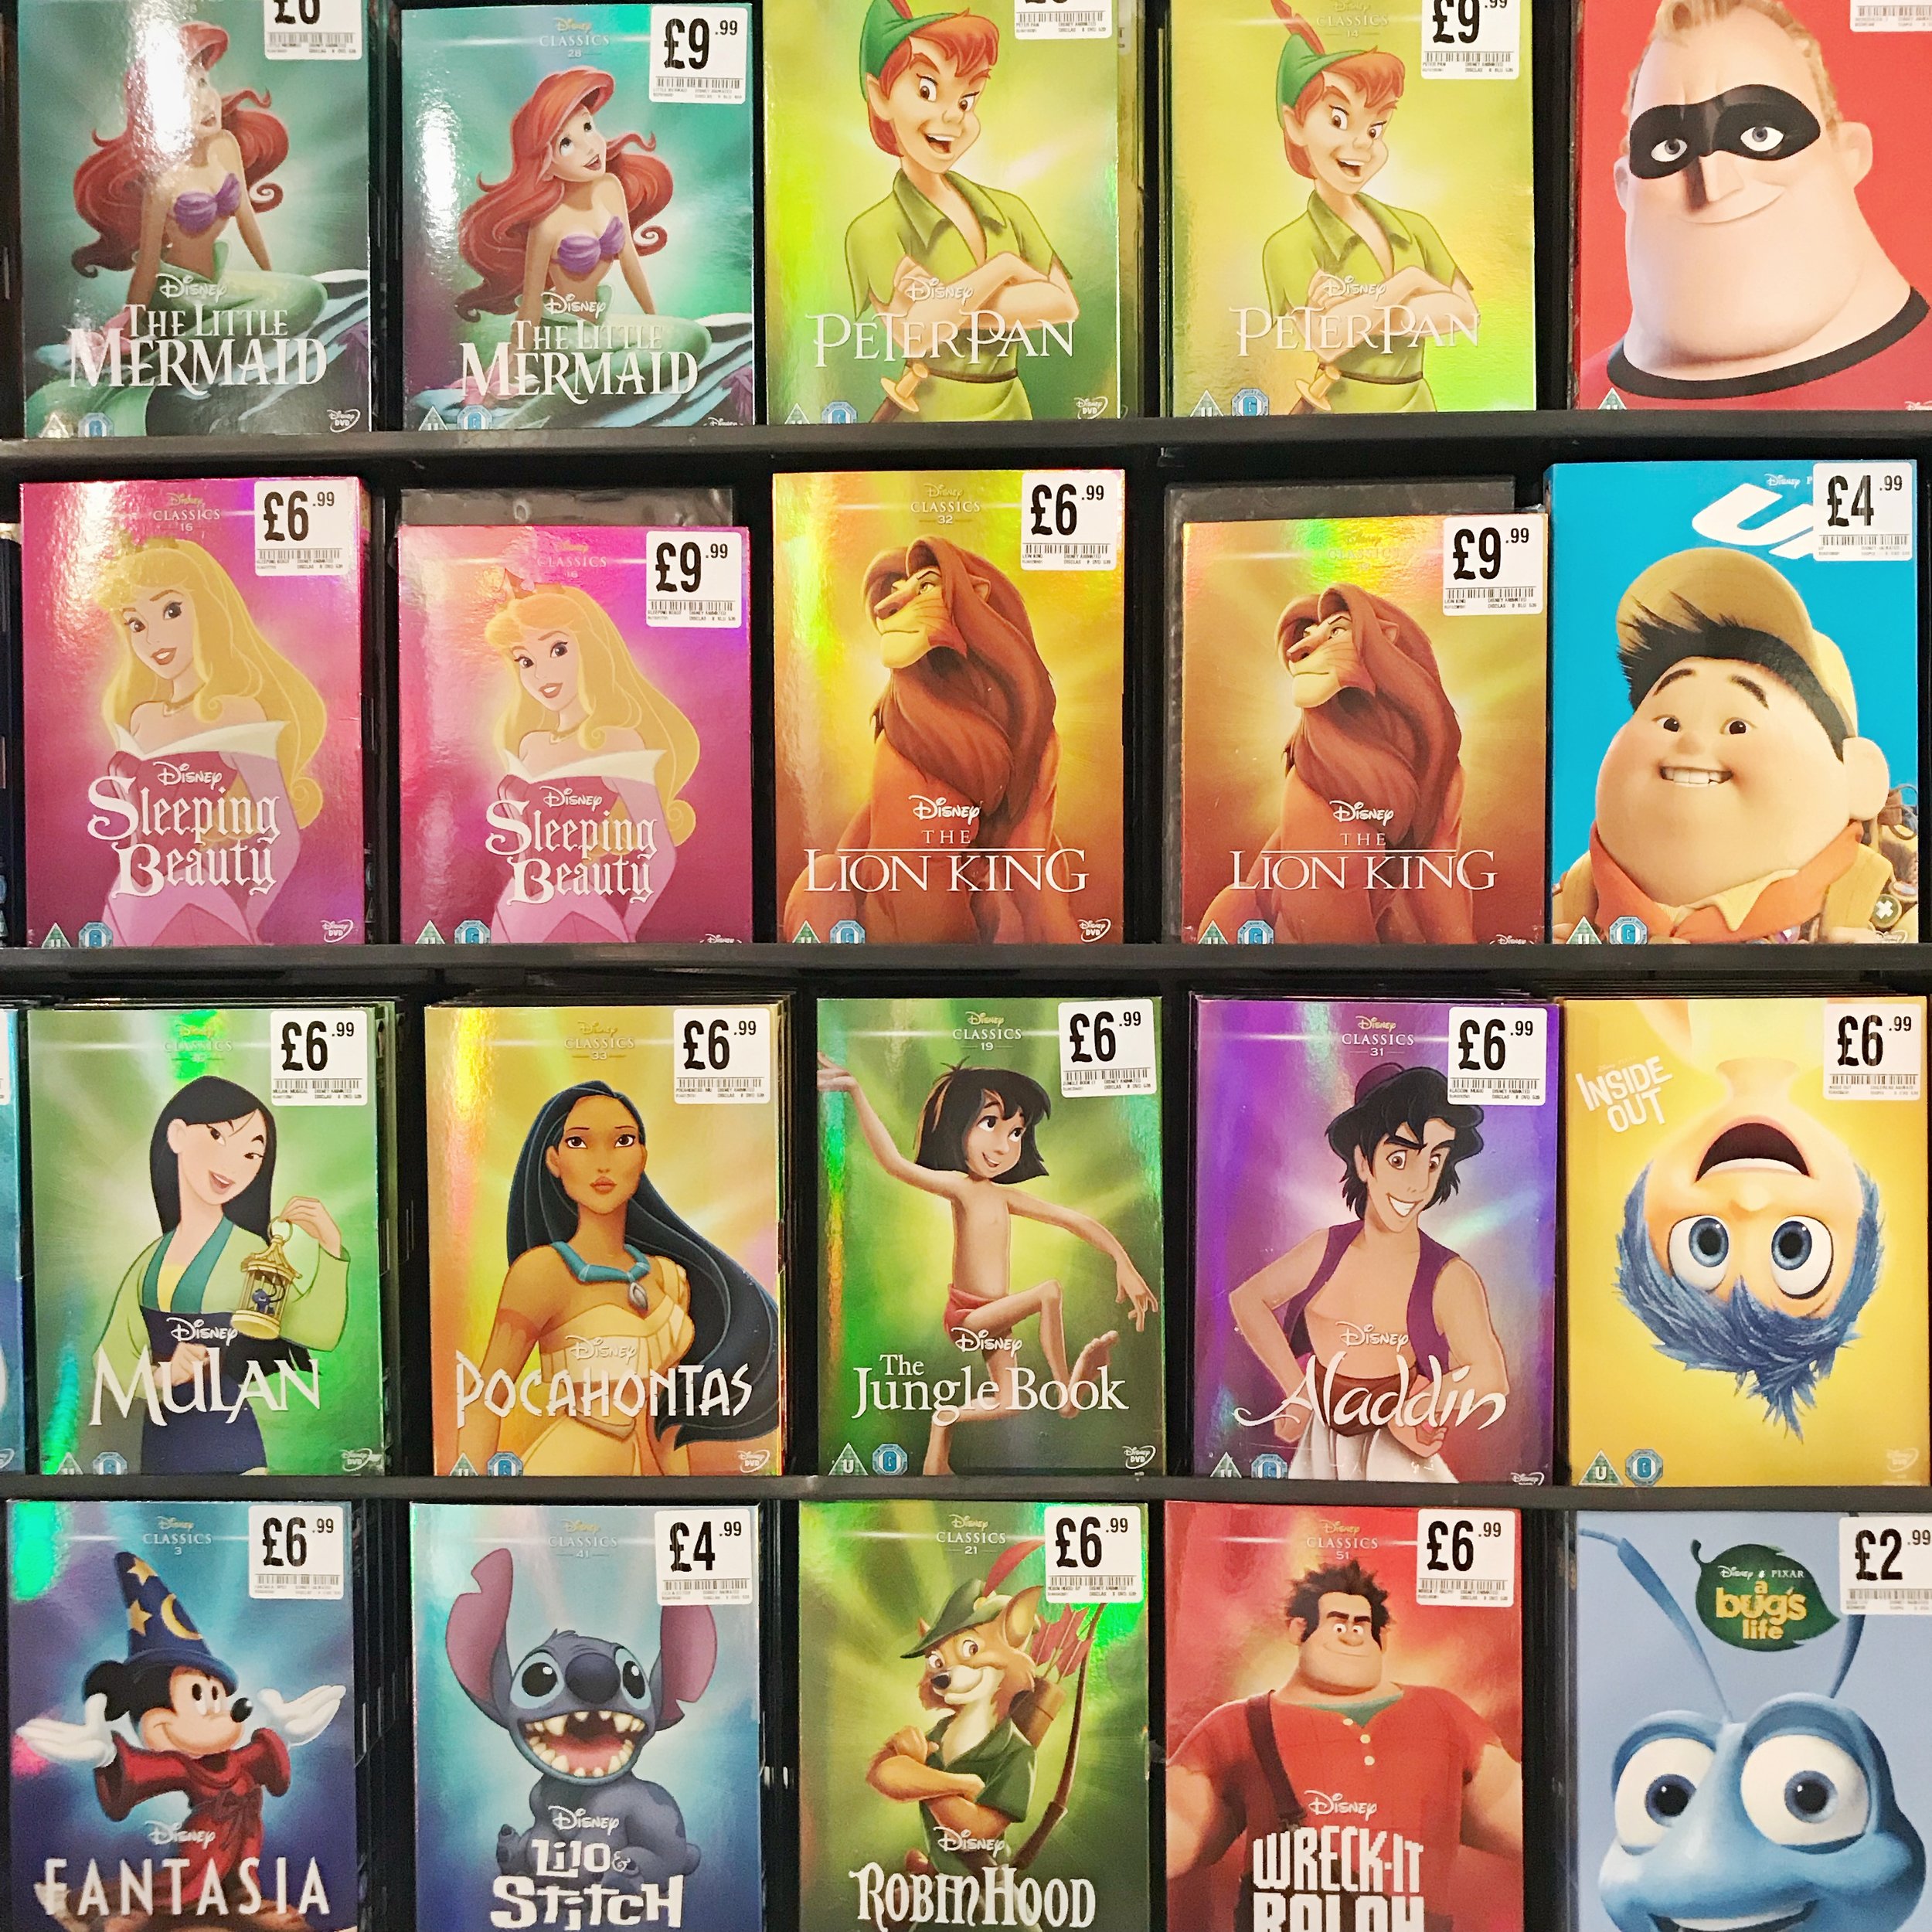 10. Disney Classics DVDs